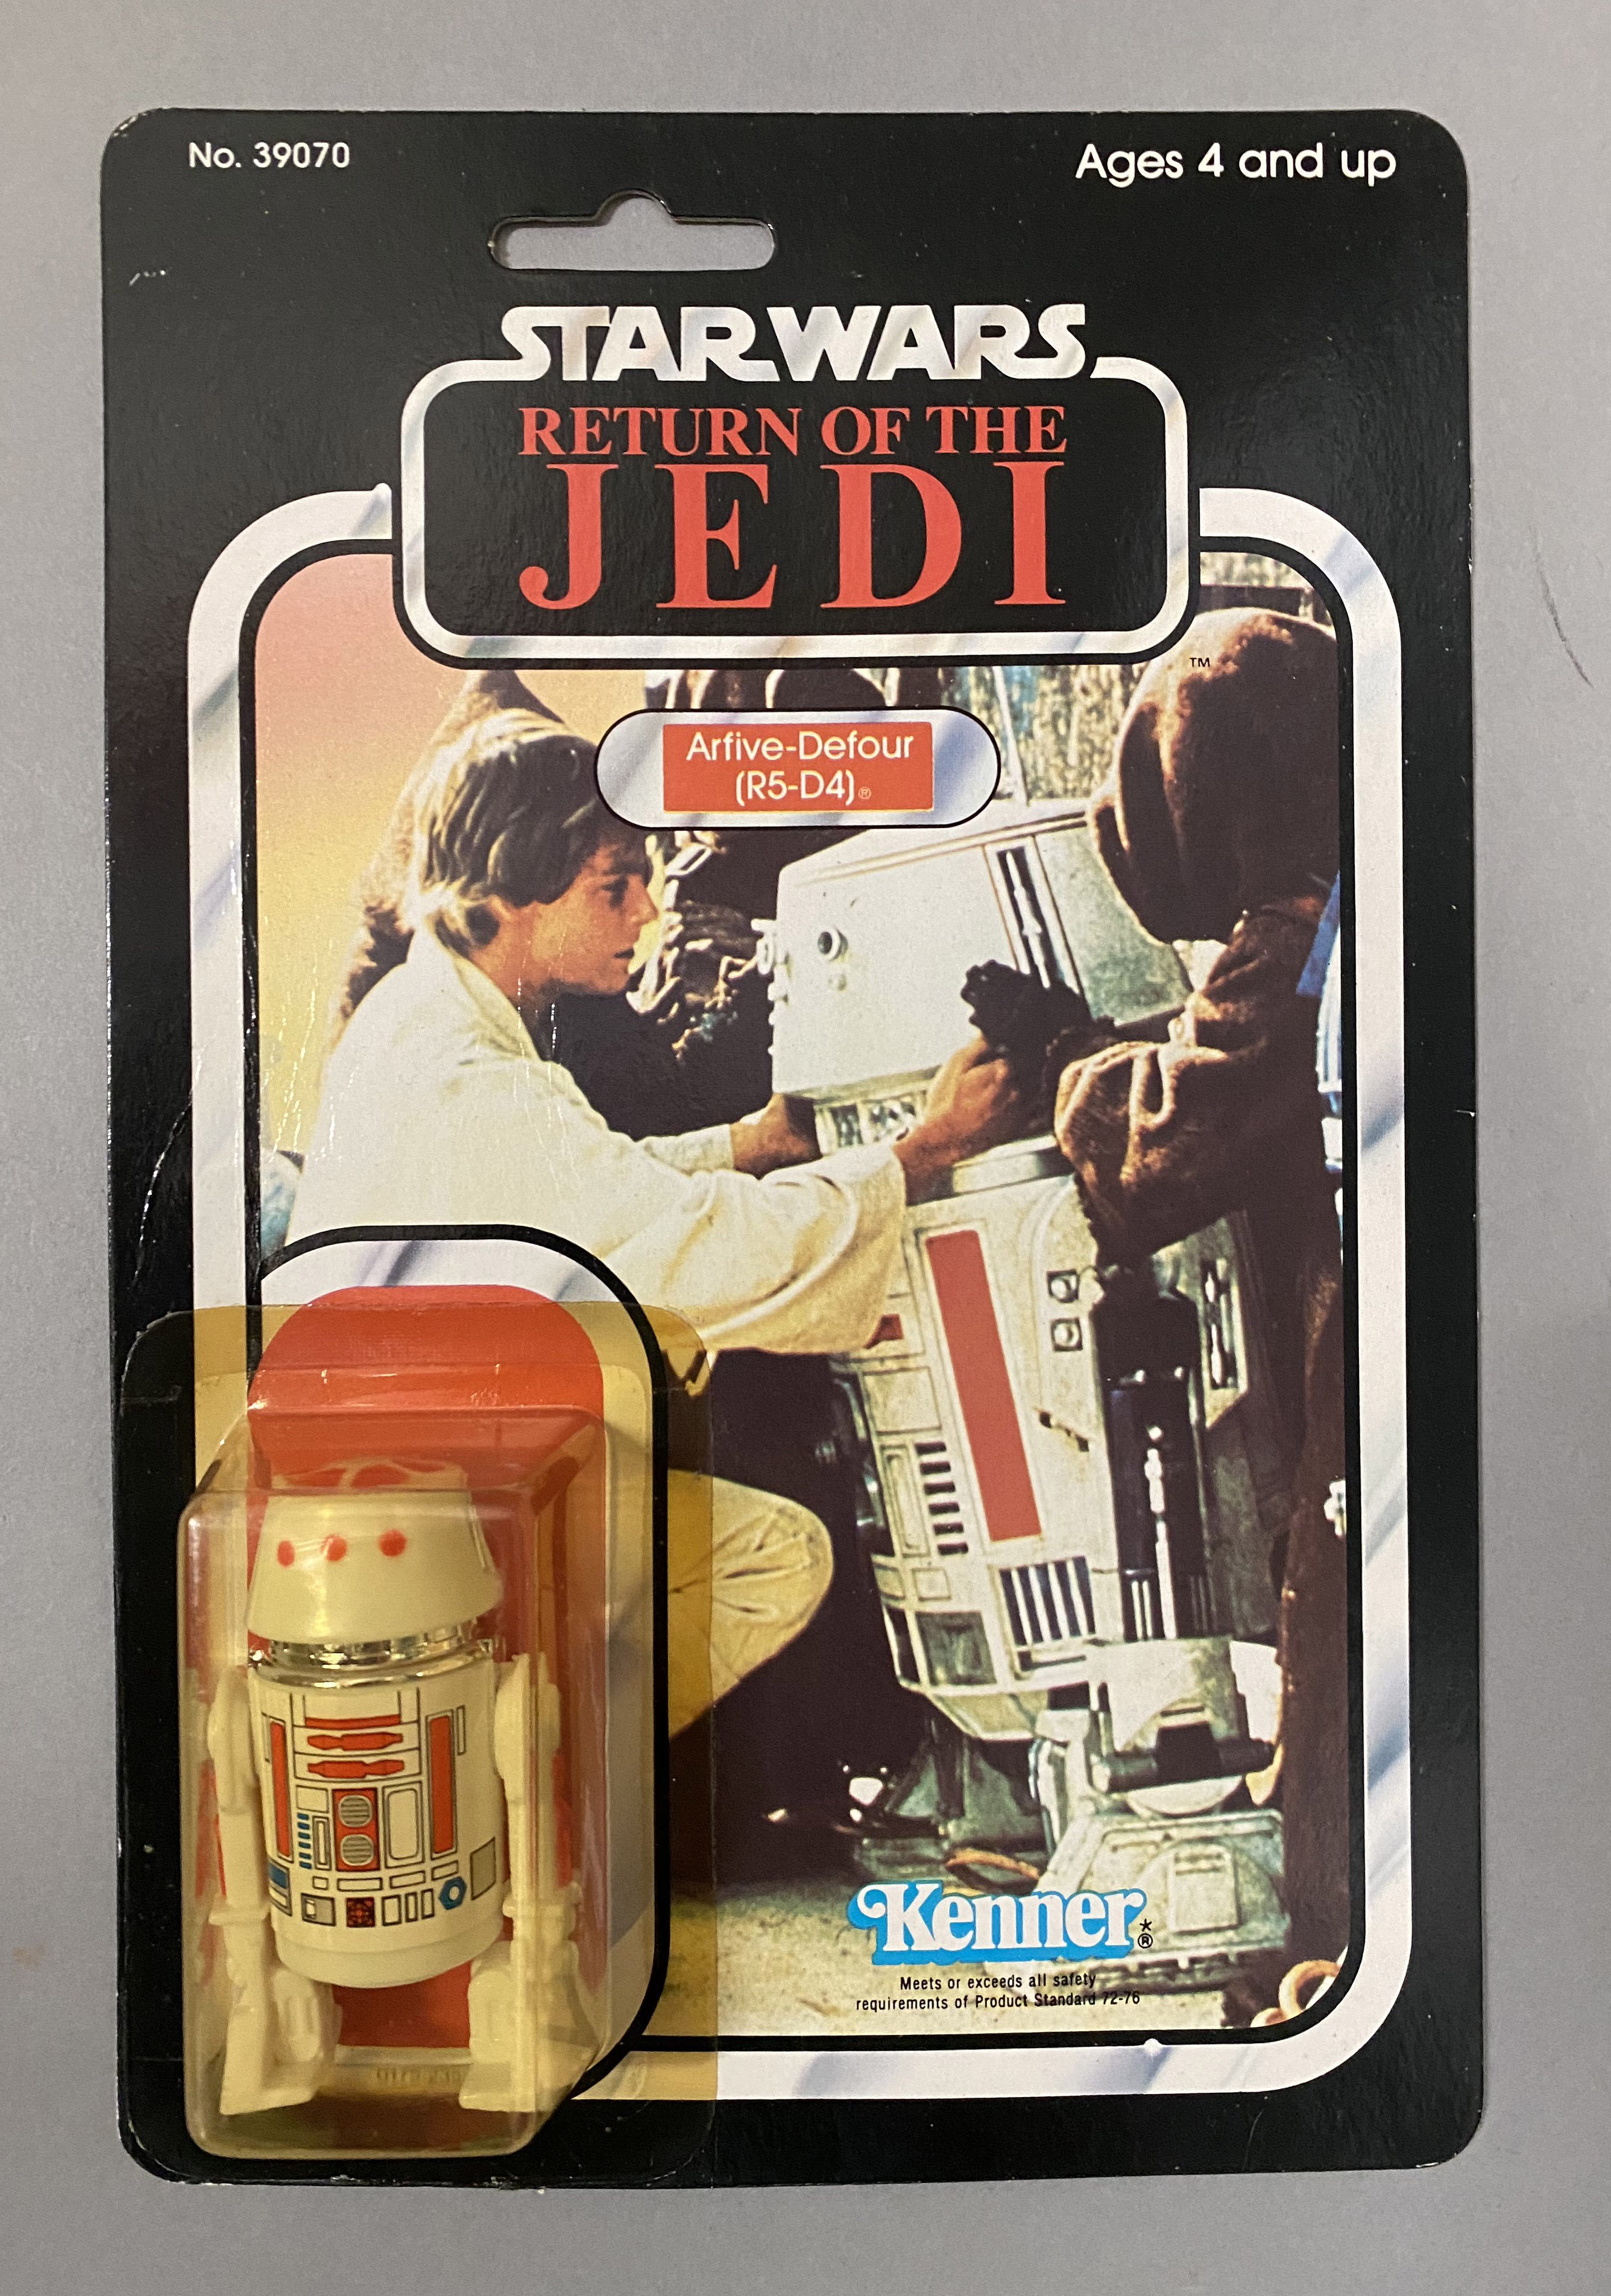 5 vintage Star Wars ROTJ Return Of The Jedi Tri-Logo figures on original backing cards: Prune Face, - Image 6 of 11